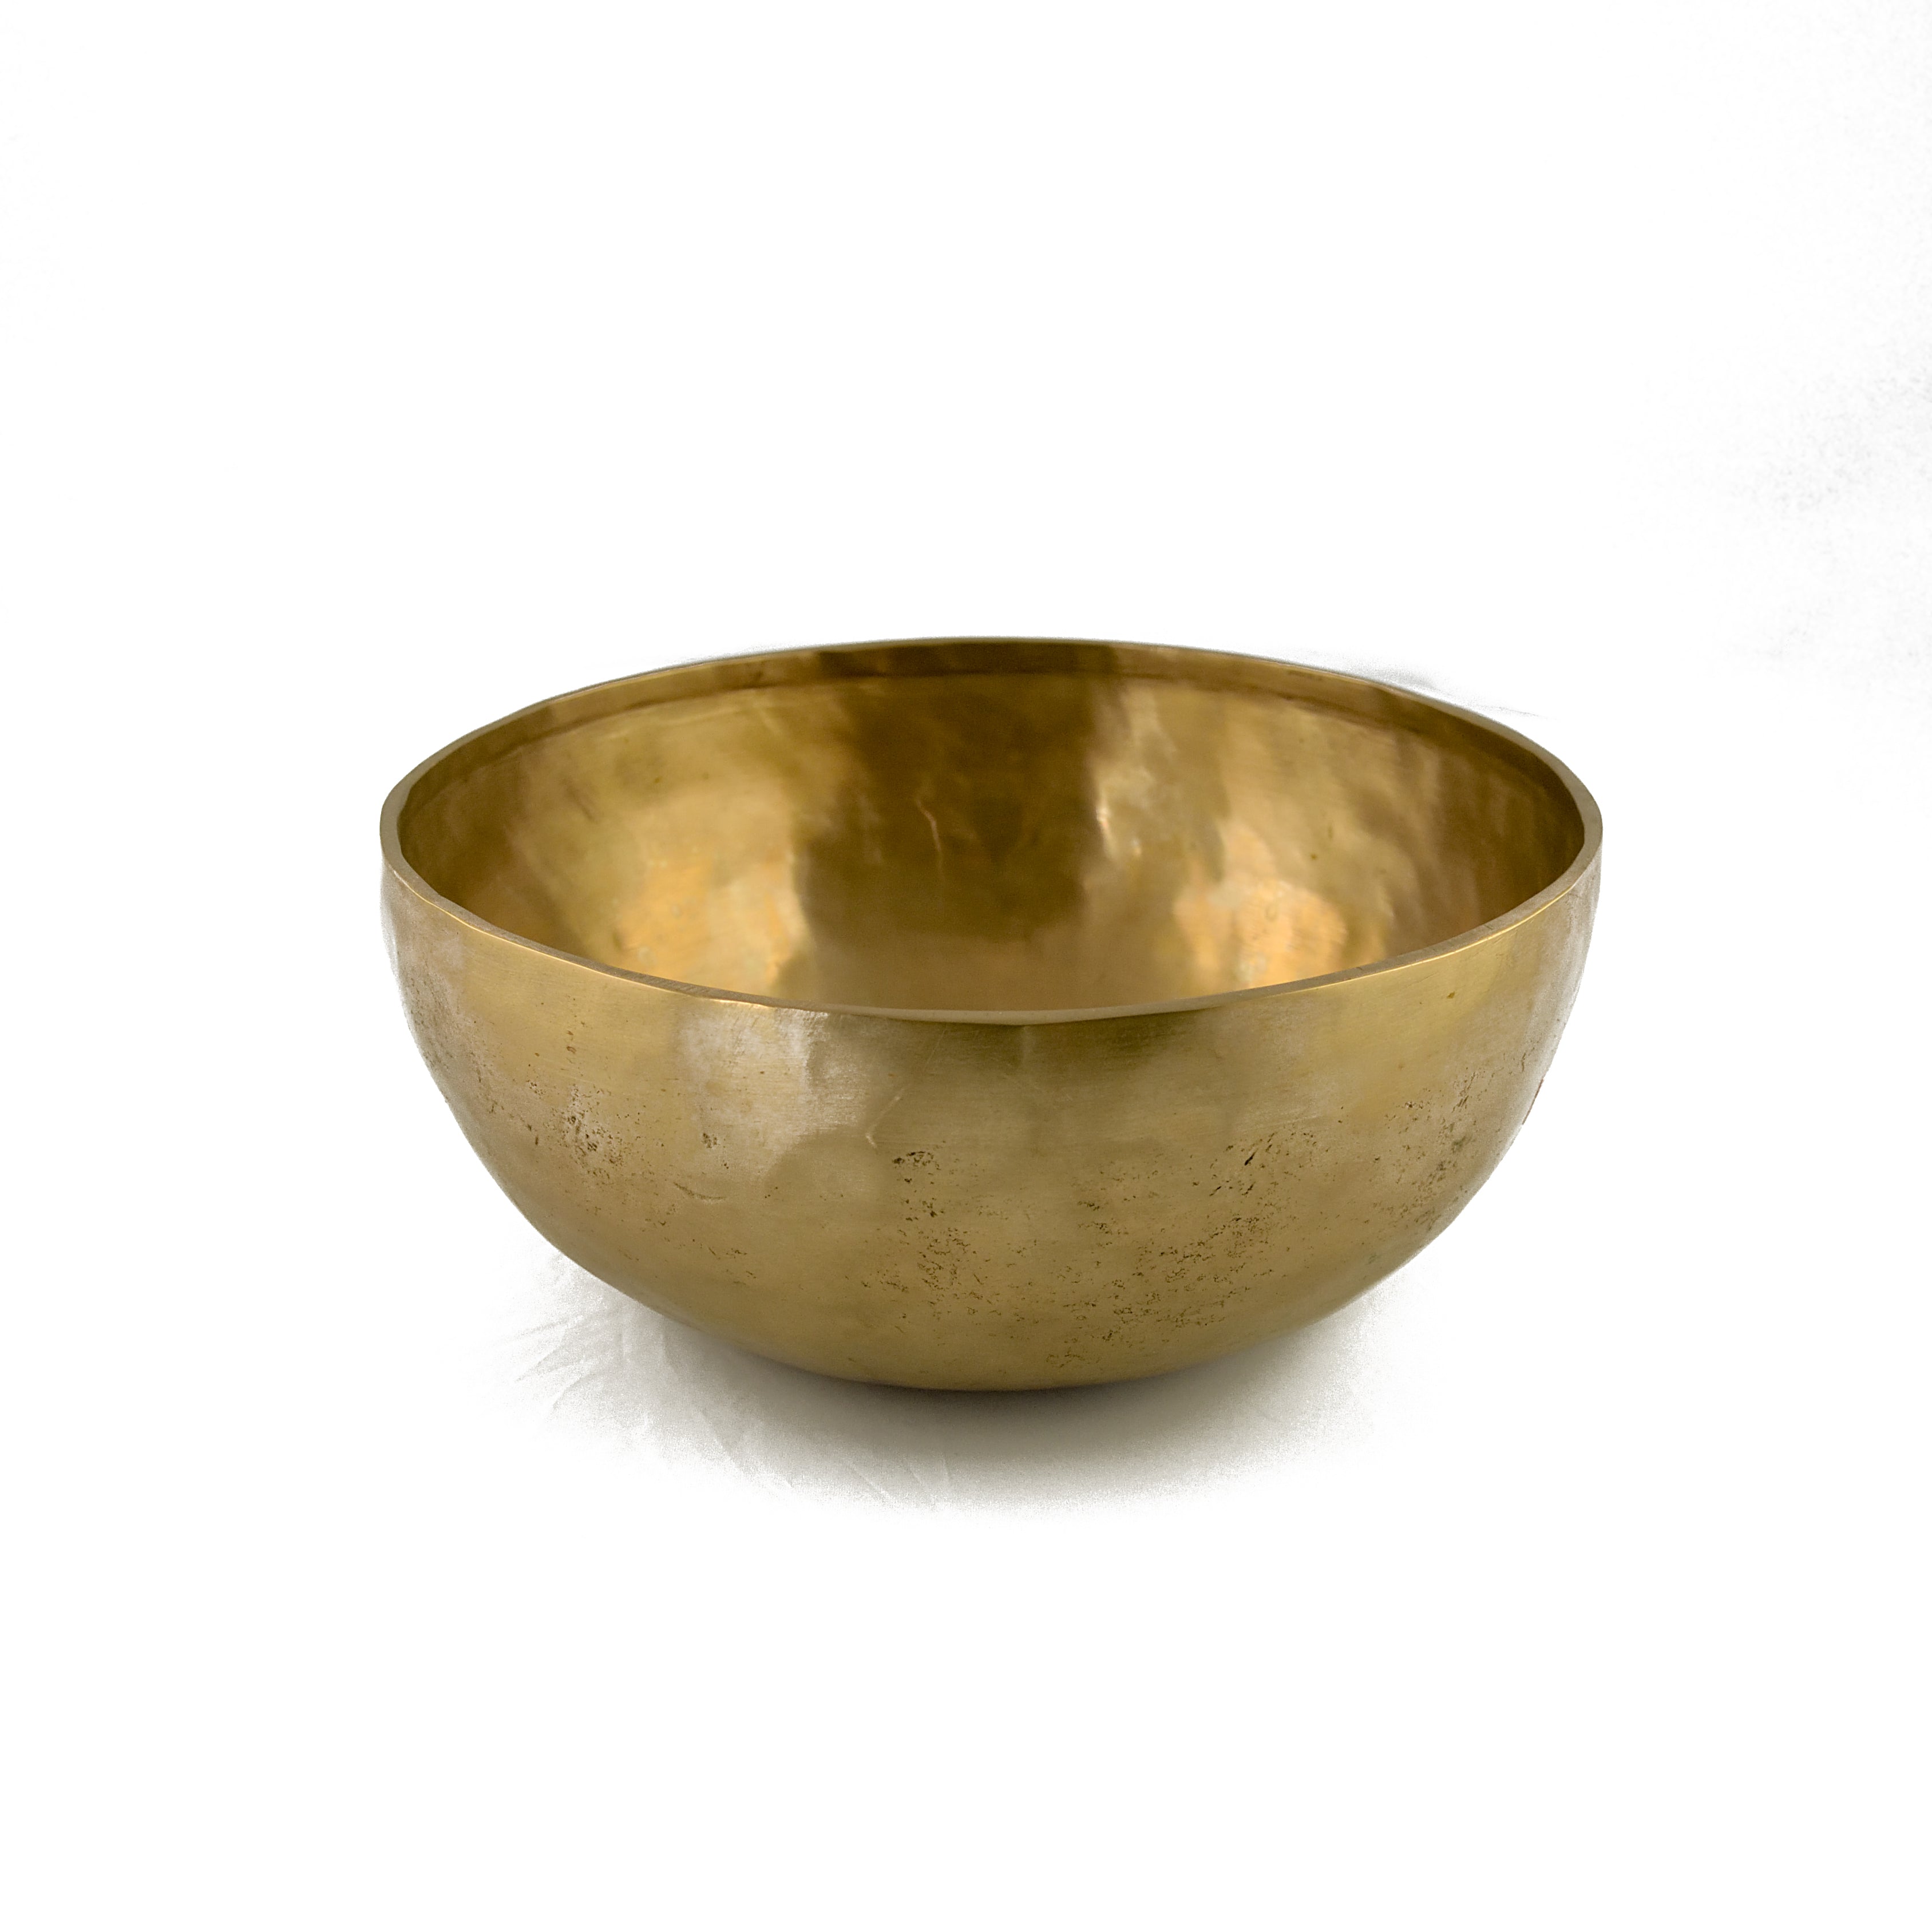 Tibetan Singing Bowl (Large) 1500-1599 gm